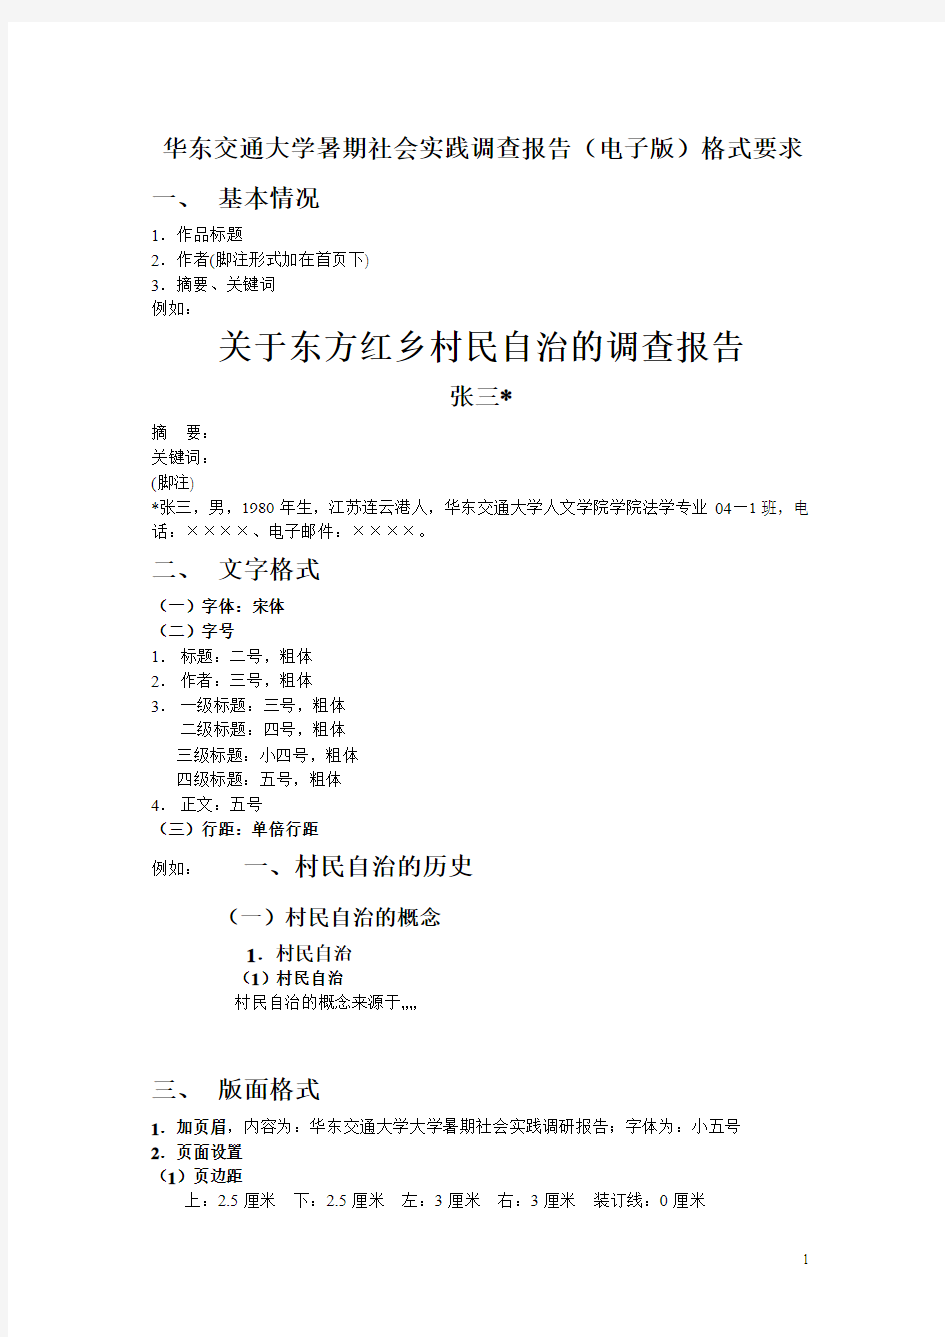 华东交通大学暑期社会实践调查报告(电子版)格式要求